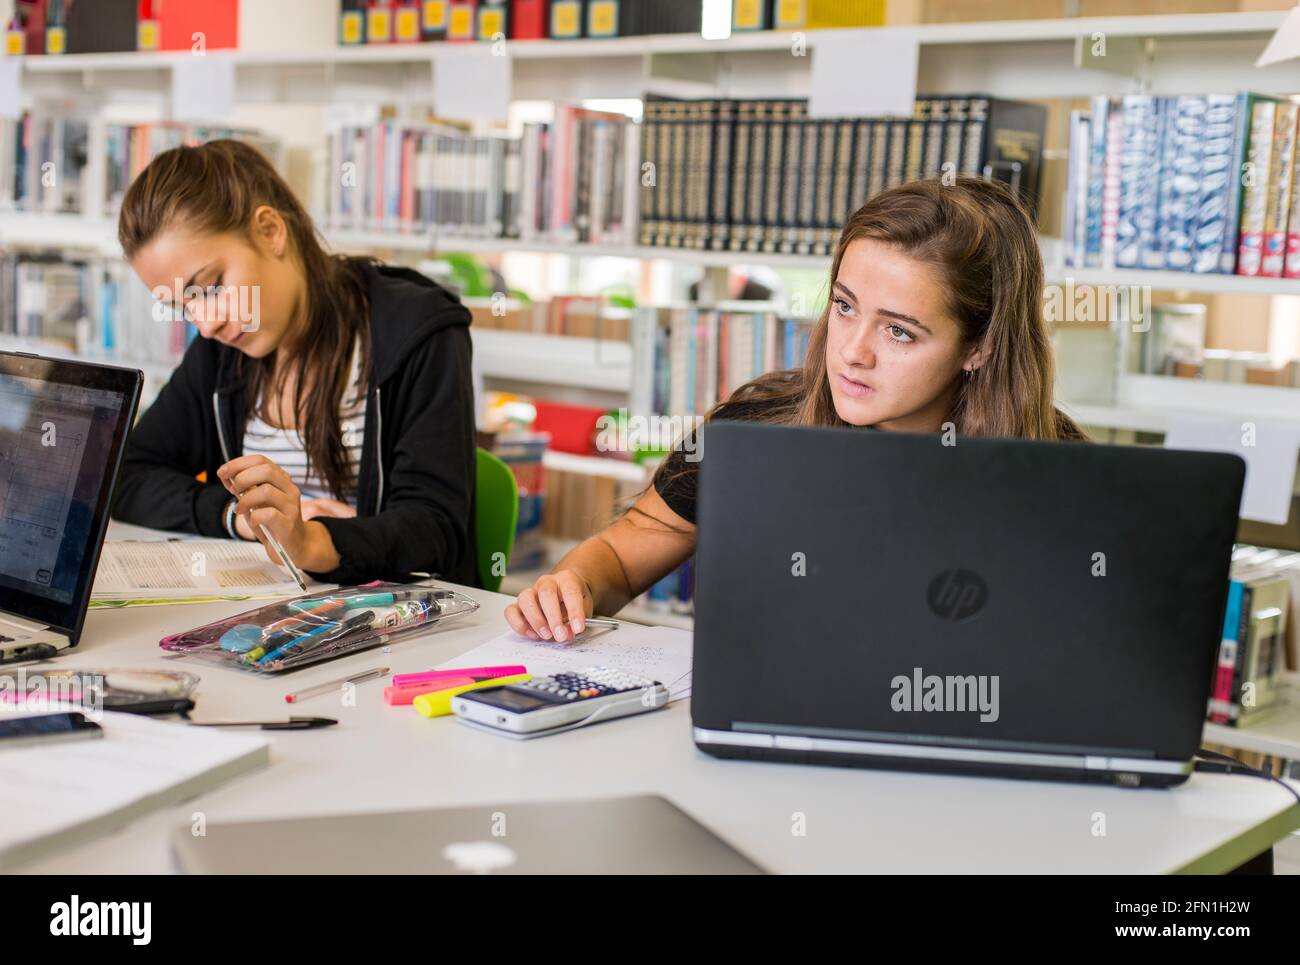 Alumnas del sexto formulario, jovencita en educación, jovencitas mirando el ordenador portátil en sexto formato, jovencitas trabajando en el ordenador portátil Foto de stock